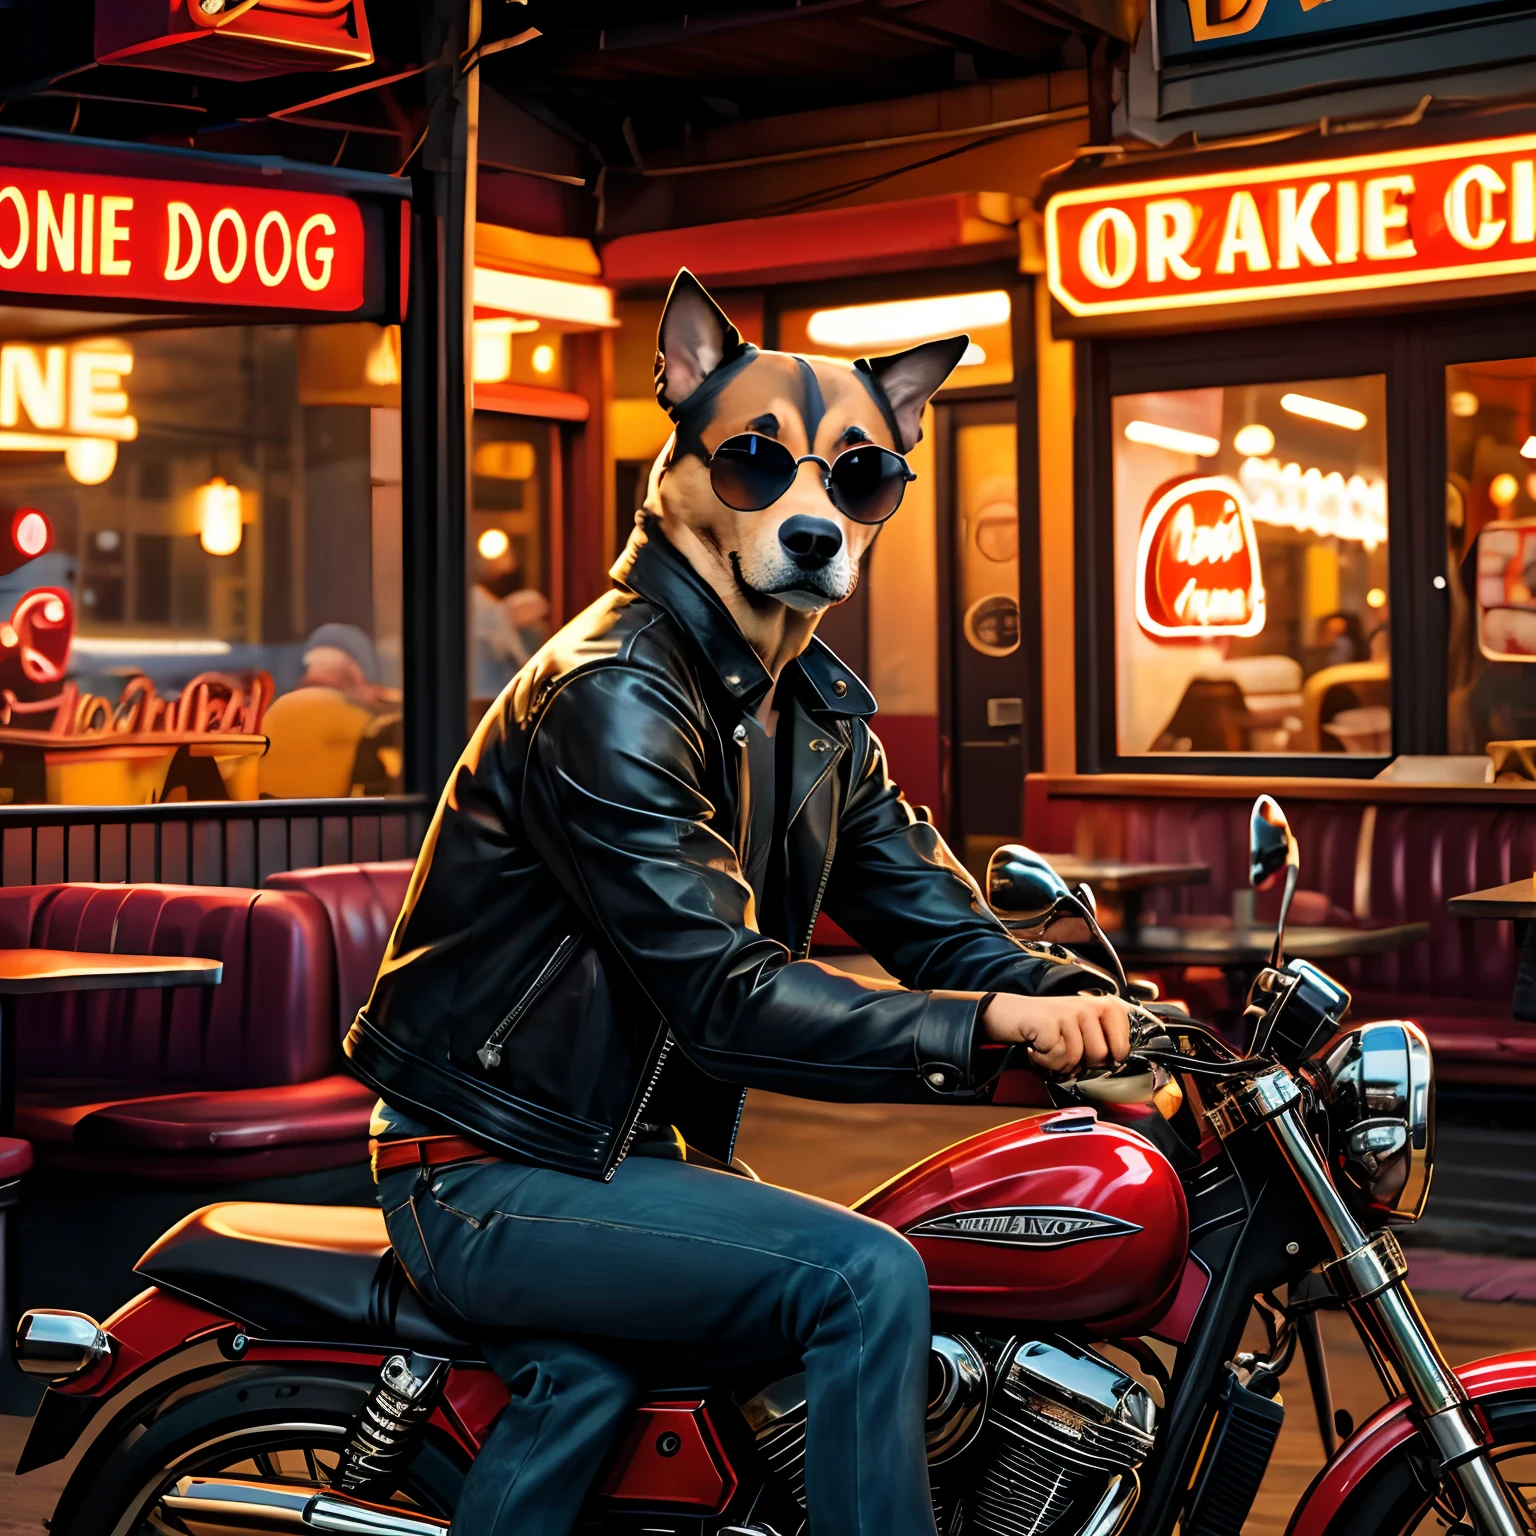 創建一隻穿著皮夾克和太陽眼鏡的狗的圖像, 坐在餐廳門口的摩托車上. 狗有悲傷和表情, 就好像他在等待一個永遠不會出現的人. 餐廳有一個霓虹燈招牌，上面寫著“阿爾維里奇港”. 圖像應具有寫實、細緻的風格, 類似於伊凡克拉克的畫, 狗的藝術家. 使用溫暖而充滿活力的顏色來對比狗的情緒.